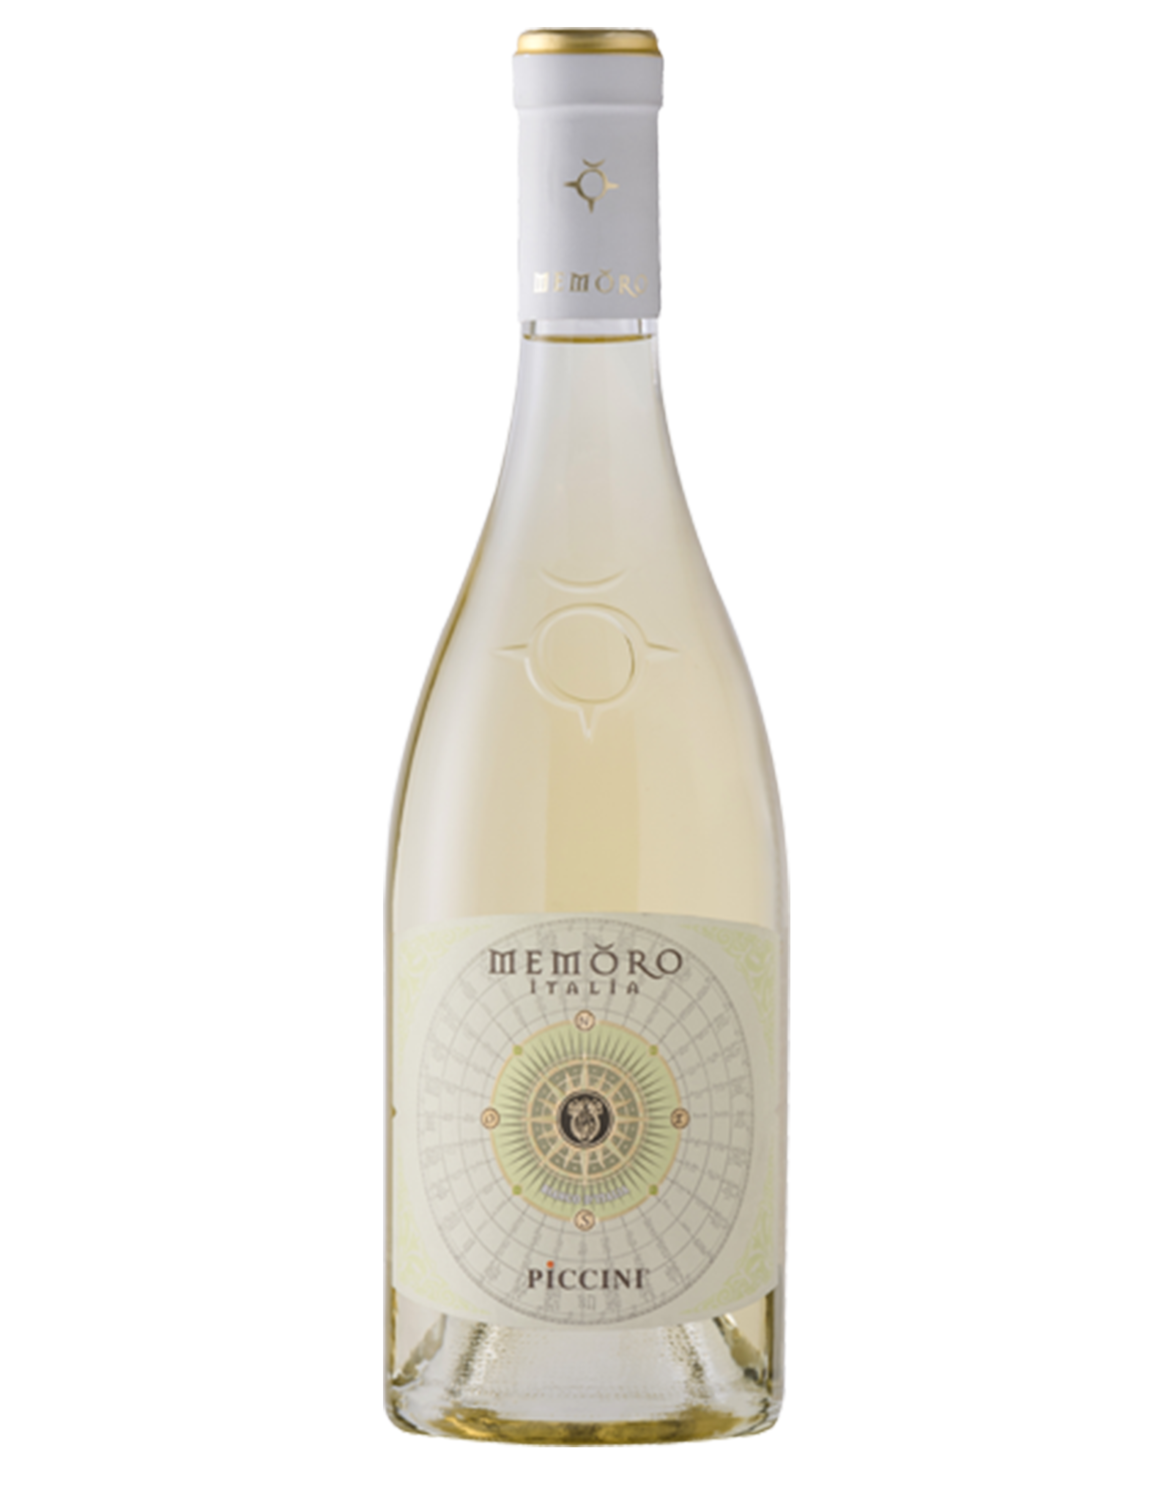 Գինի «Piccini Memoro» սպիտակ չոր 750 մլ